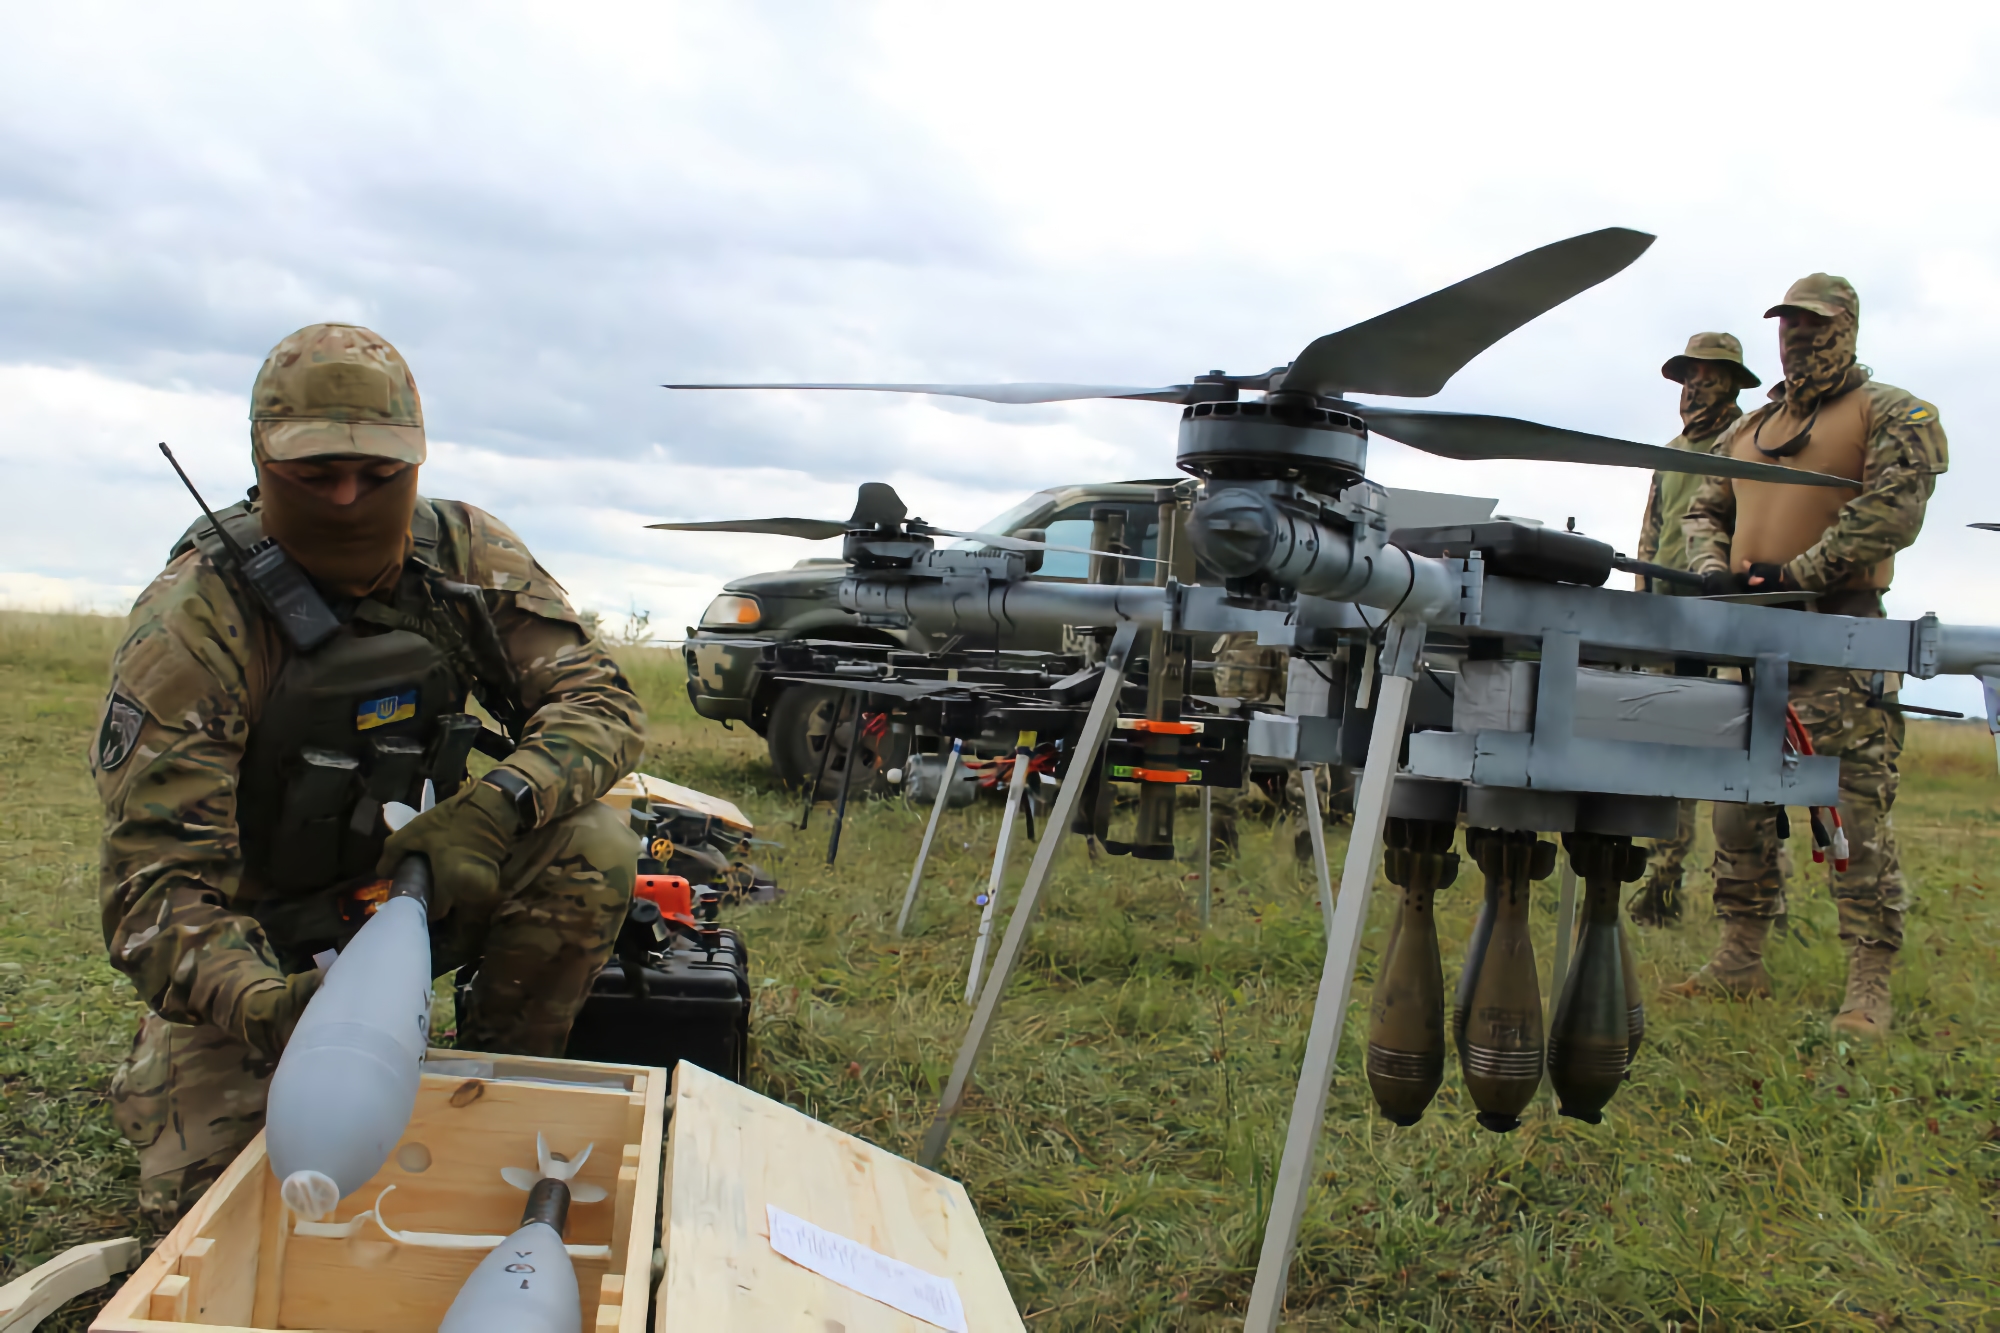 Las Fuerzas Armadas recibieron un gran octocóptero, que puede transportar hasta 6 minas antitanque